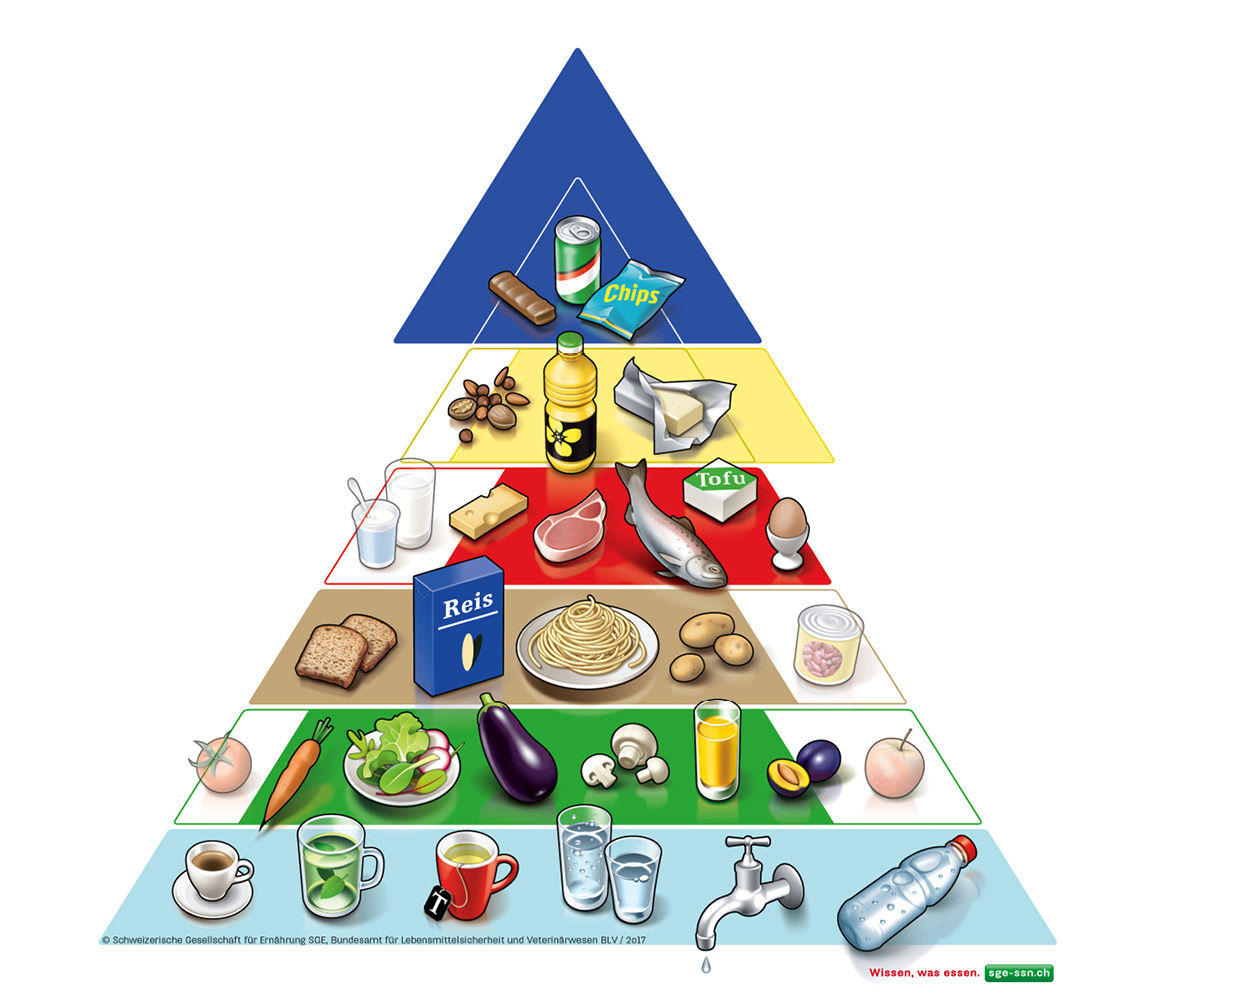 Die Lebensmittelpyramide der tatsächlich konsumierten Lebensmittel veranschaulicht die Abweichungen von einer ausgewogenen Ernährung.